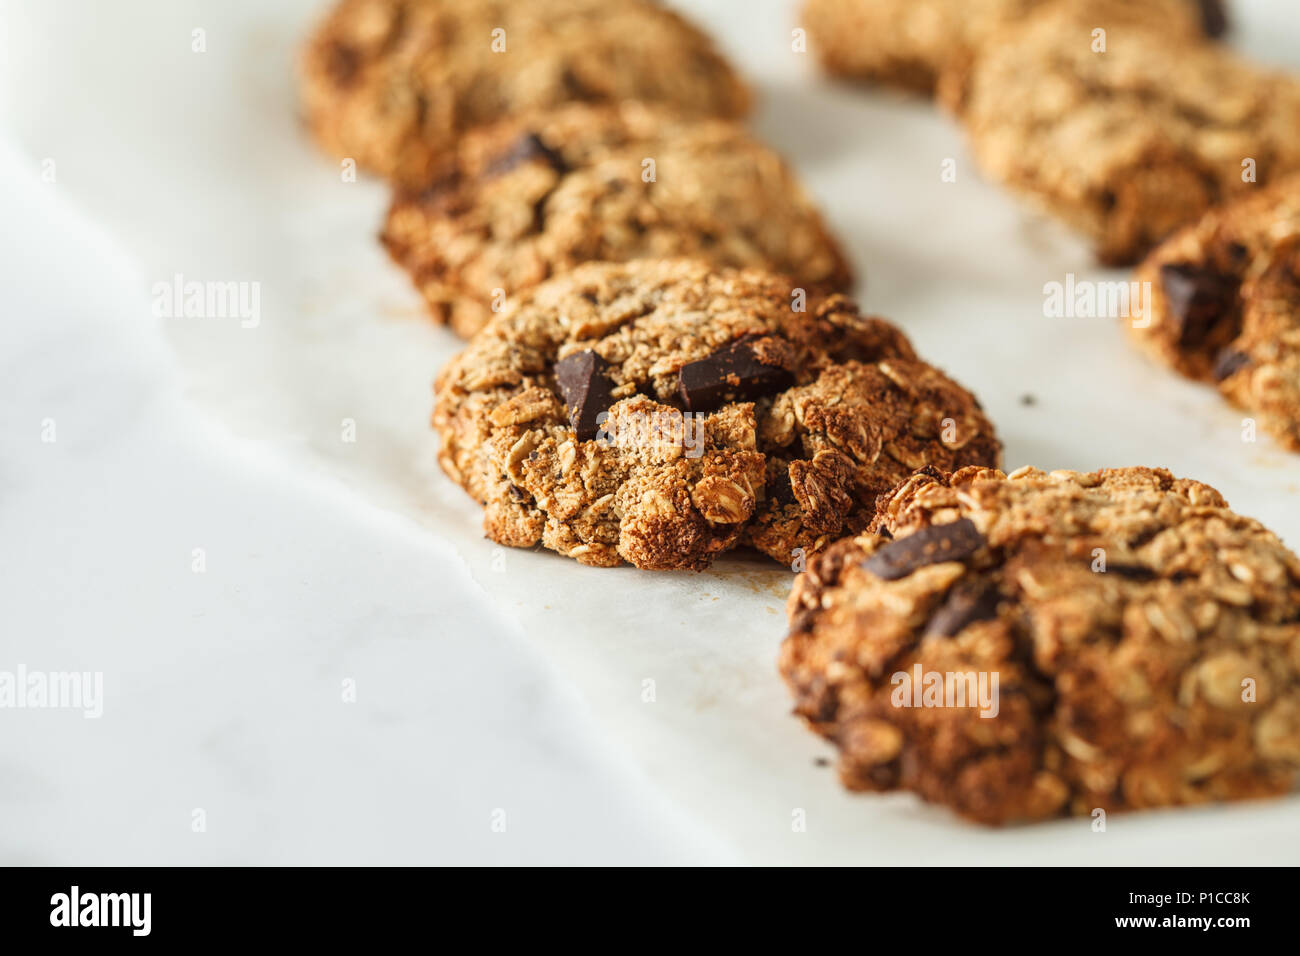 Vegan Haferflocken Kekse mit Schokolade auf einem hellen Hintergrund. Essen blog style Konzept. Stockfoto